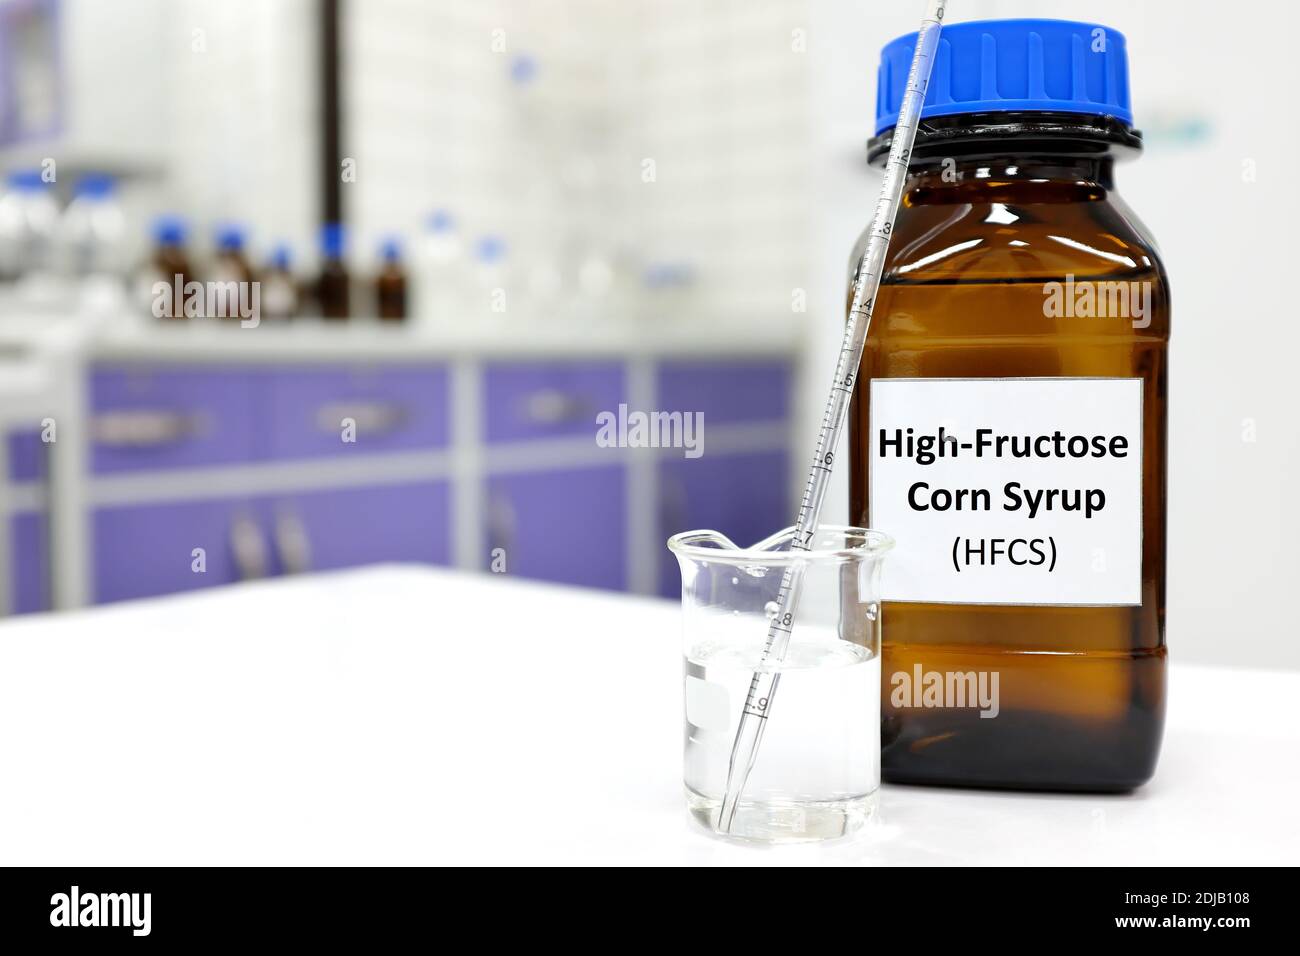 Selektiver Fokus von High-Fructose-Maissirup oder hfcs Lebensmittel- und Getränkesüßstoff in dunkelbrauner Glasflasche im Labor. Stockfoto